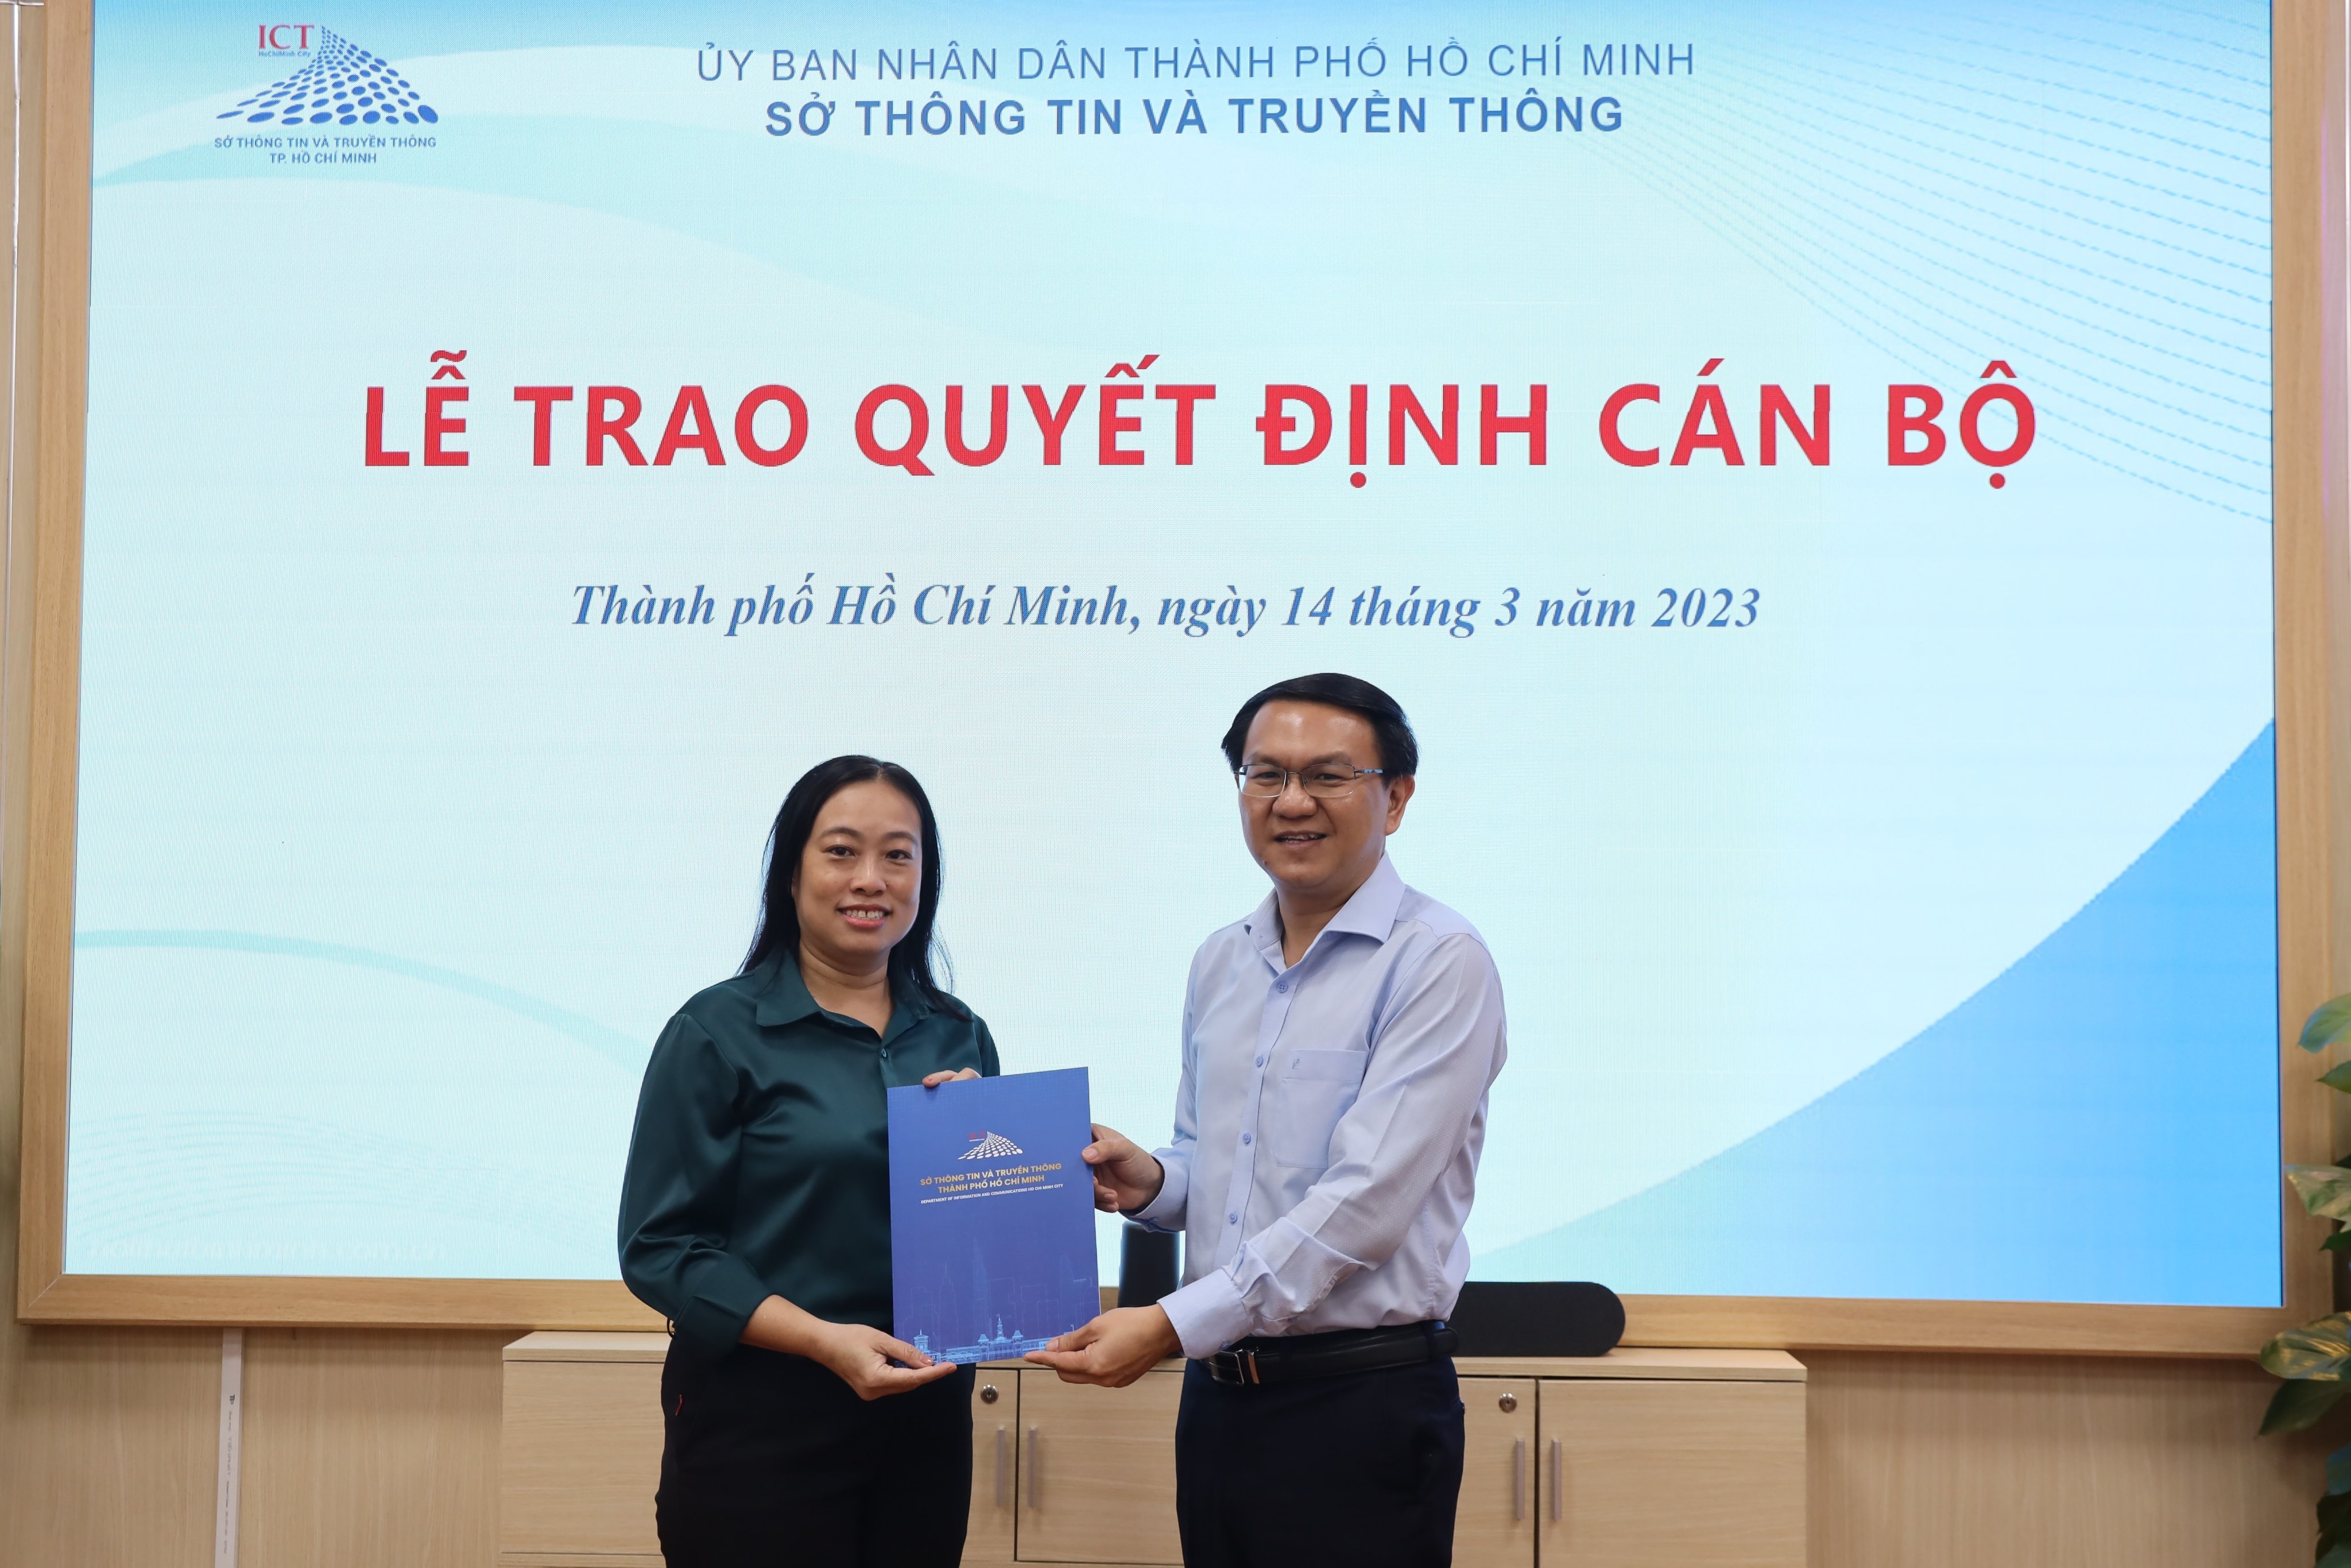 Bà Nguyễn Đình Như Hương là Giám đốc Trung tâm Báo chí Thành phố Hồ Chí Minh - 1